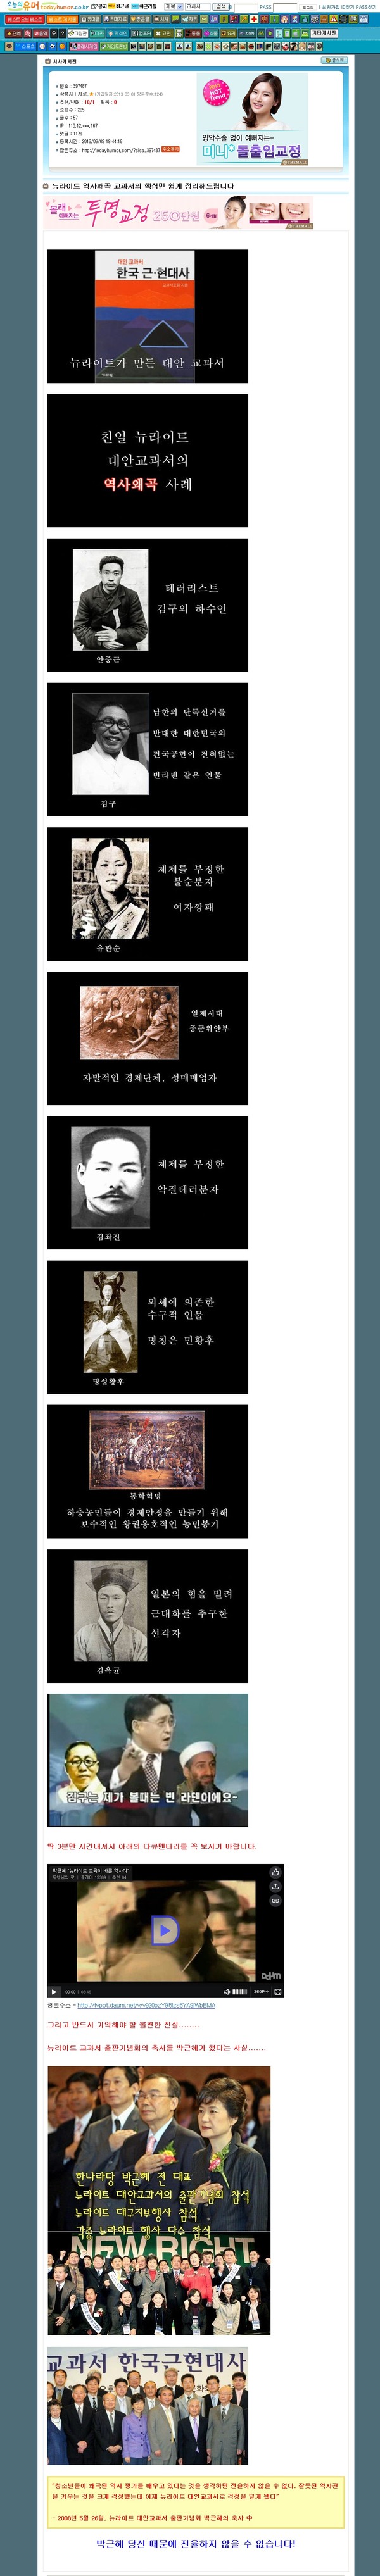 ▲ '자로'라는 아이디를 쓰는 네티즌이 커뮤니티 사이트 '오늘의 유머'에 올린 '교학사' 교과서 관련 유언비어.ⓒ 화면 캡처